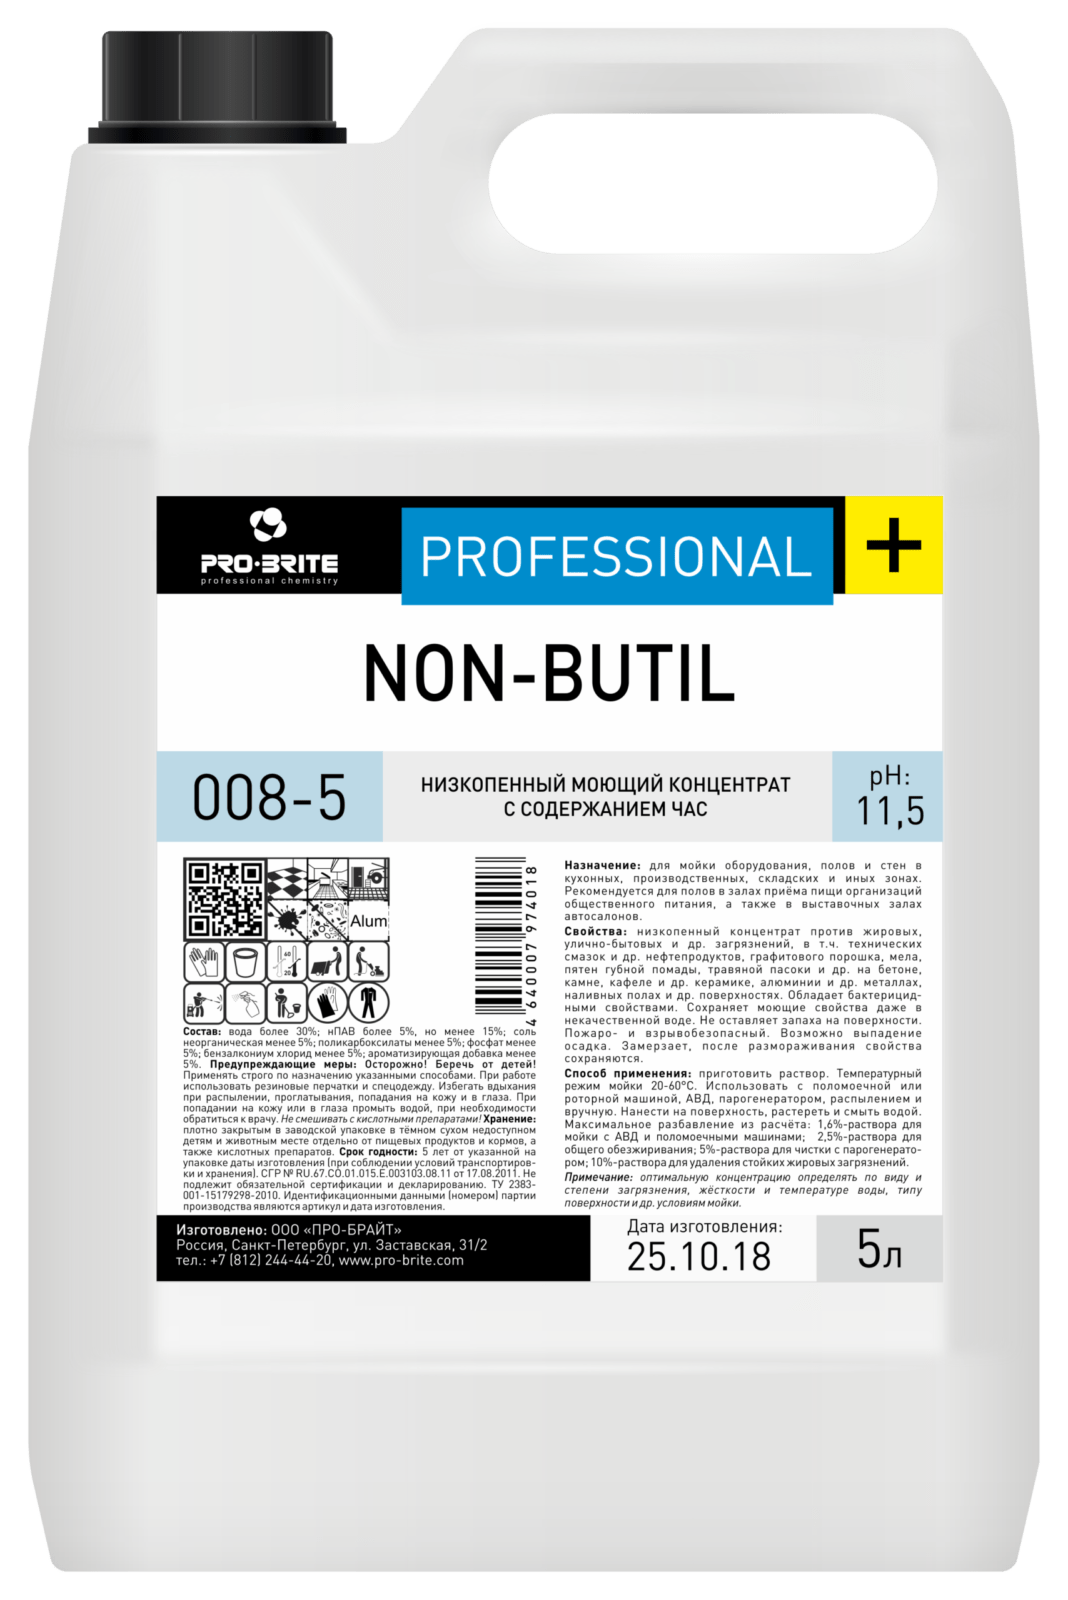 Non-butil